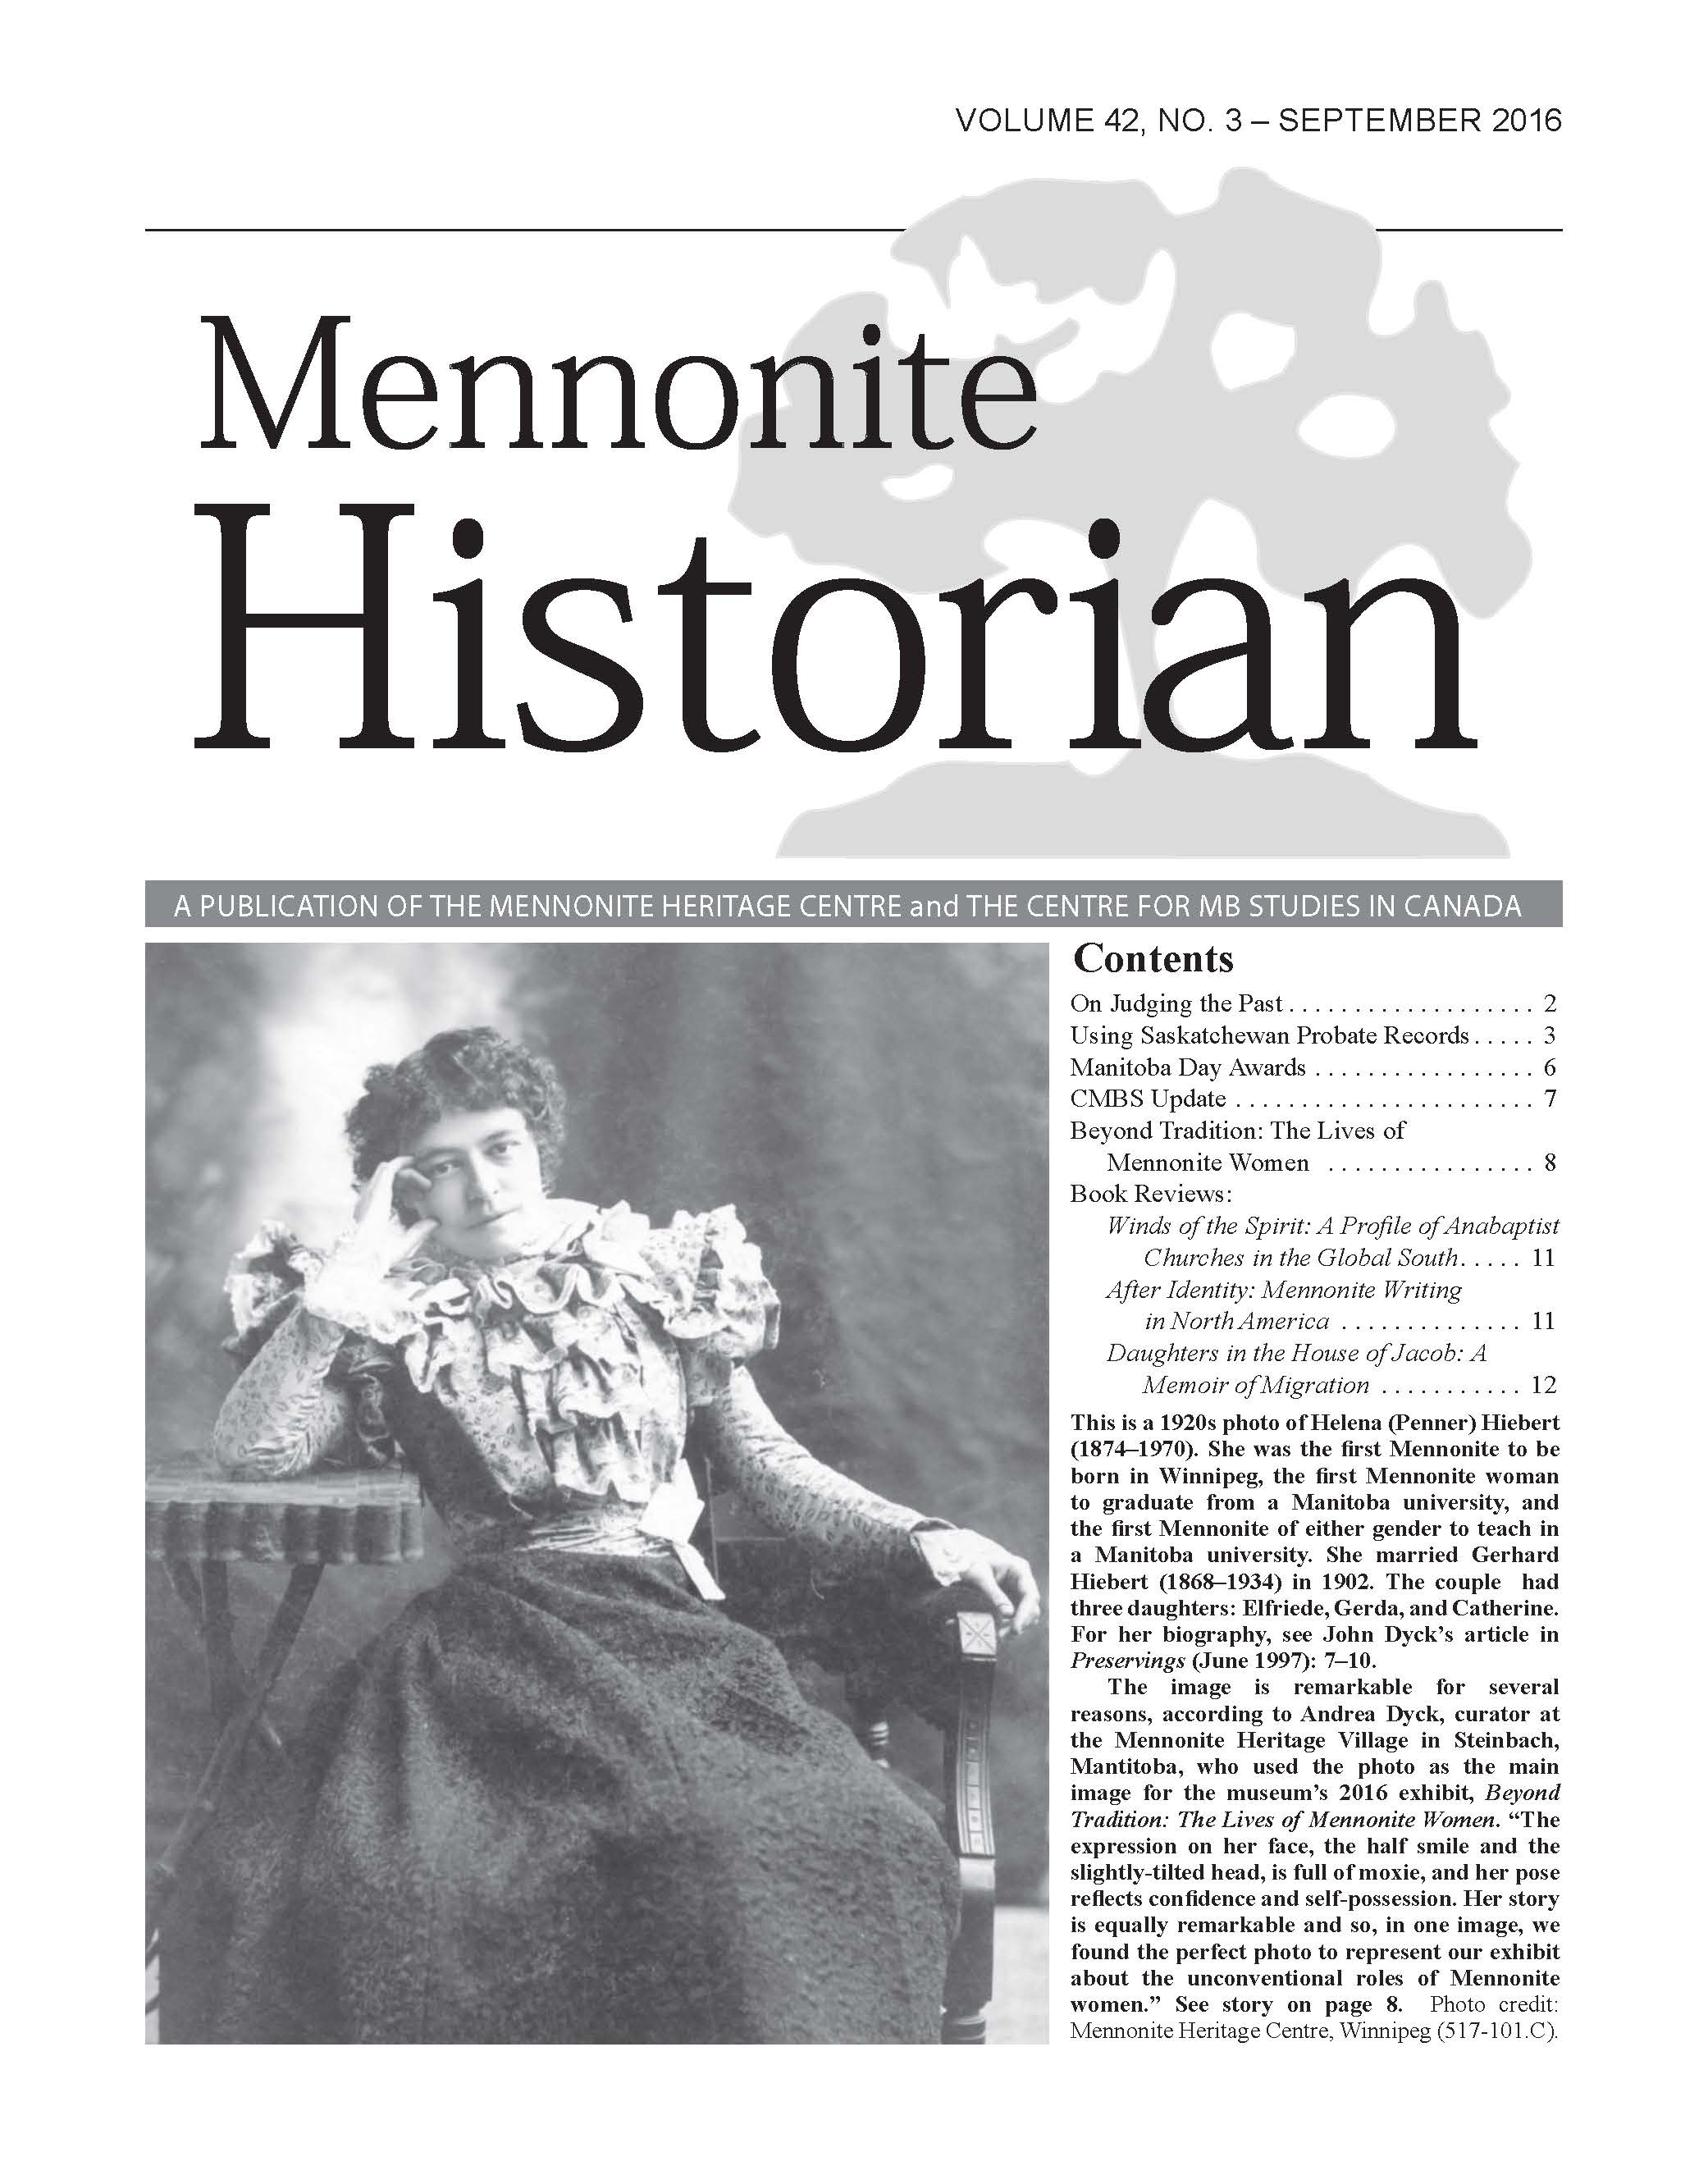 Mennonite Historian (September 2016)